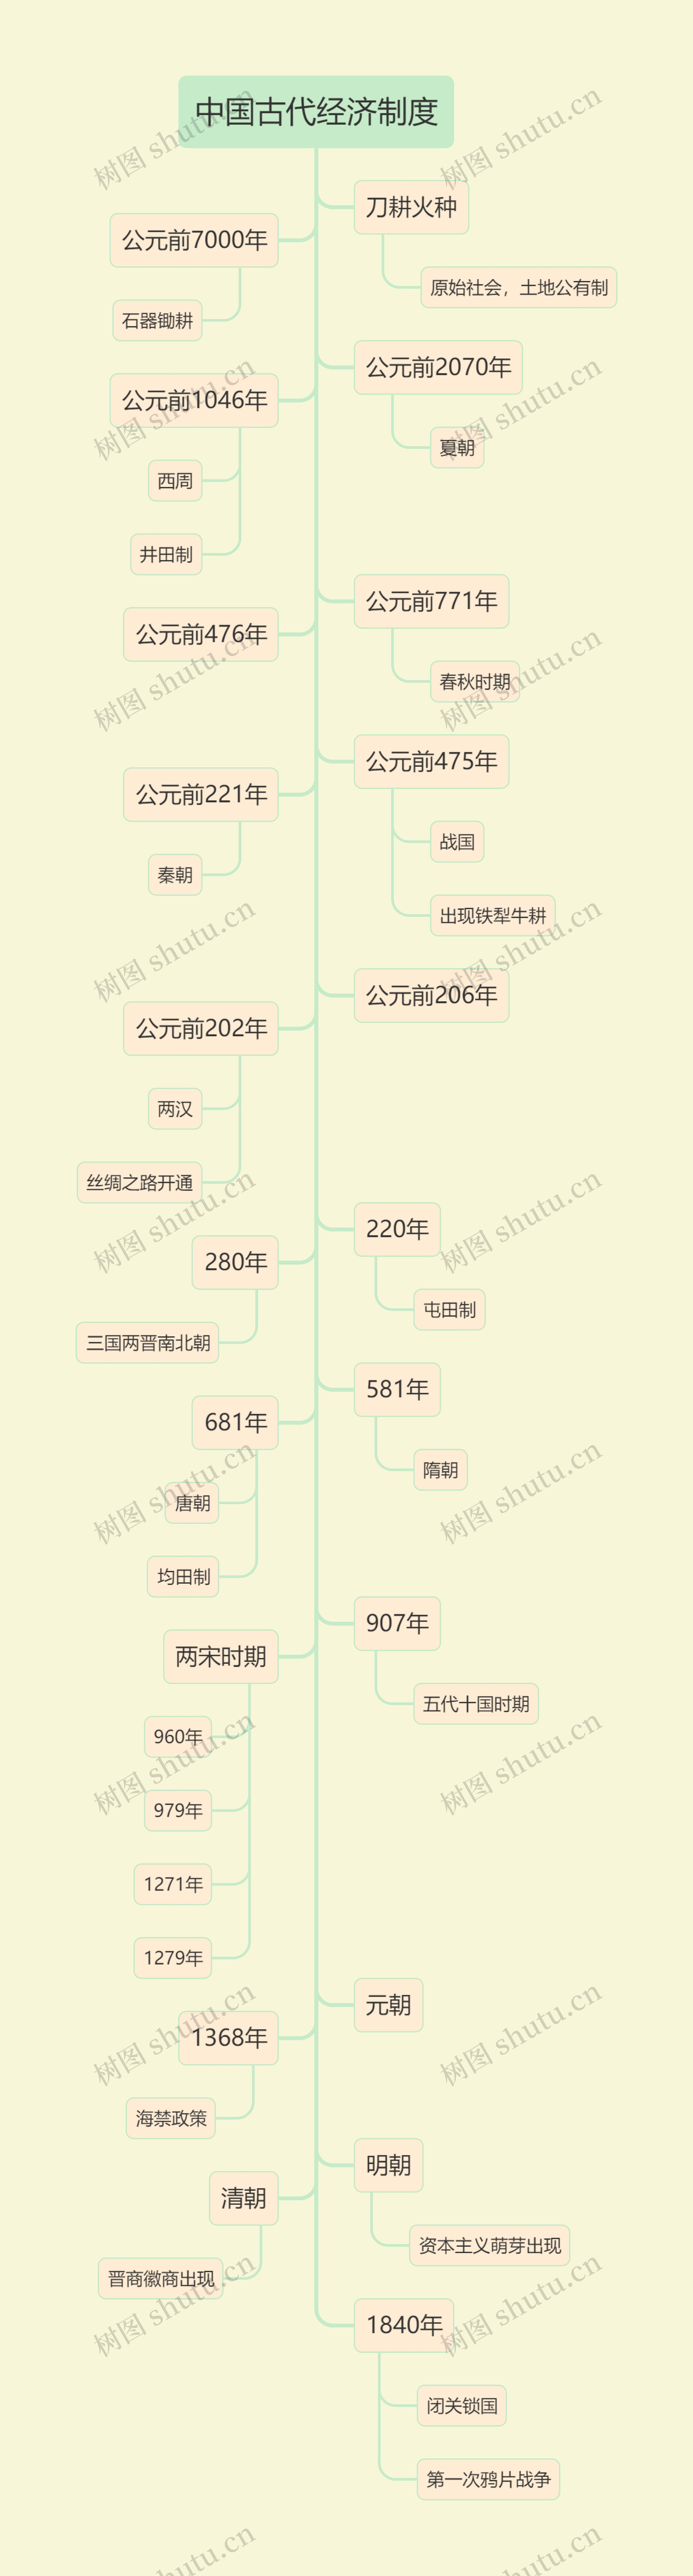 马卡龙色系中国古代经济制度树形图